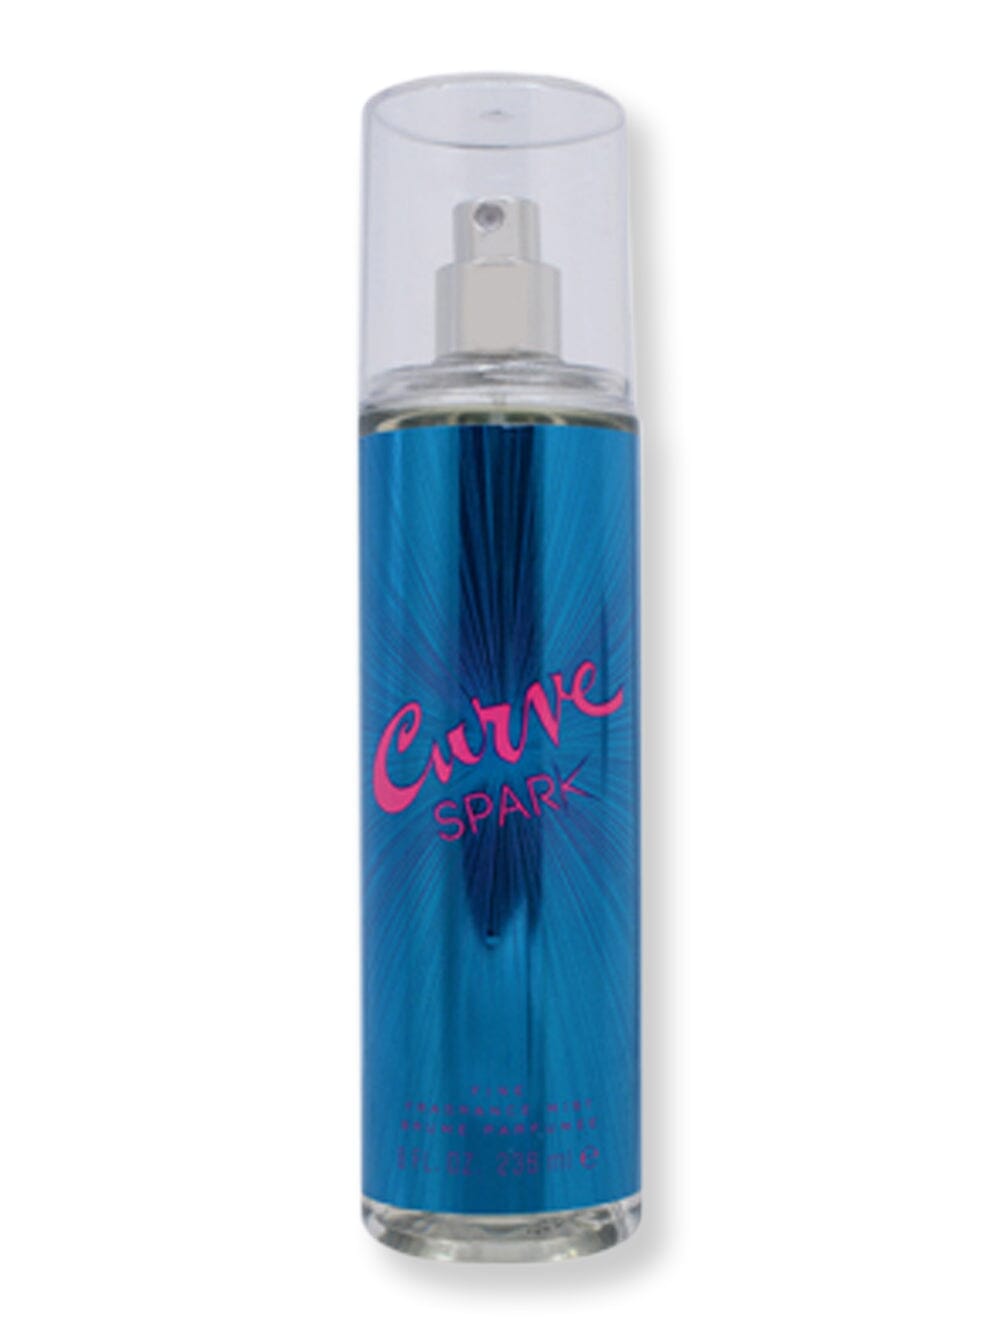 Liz Claiborne Liz Claiborne Curve Spark Fragrance Mist Spray 8 oz240 ml Perfume 